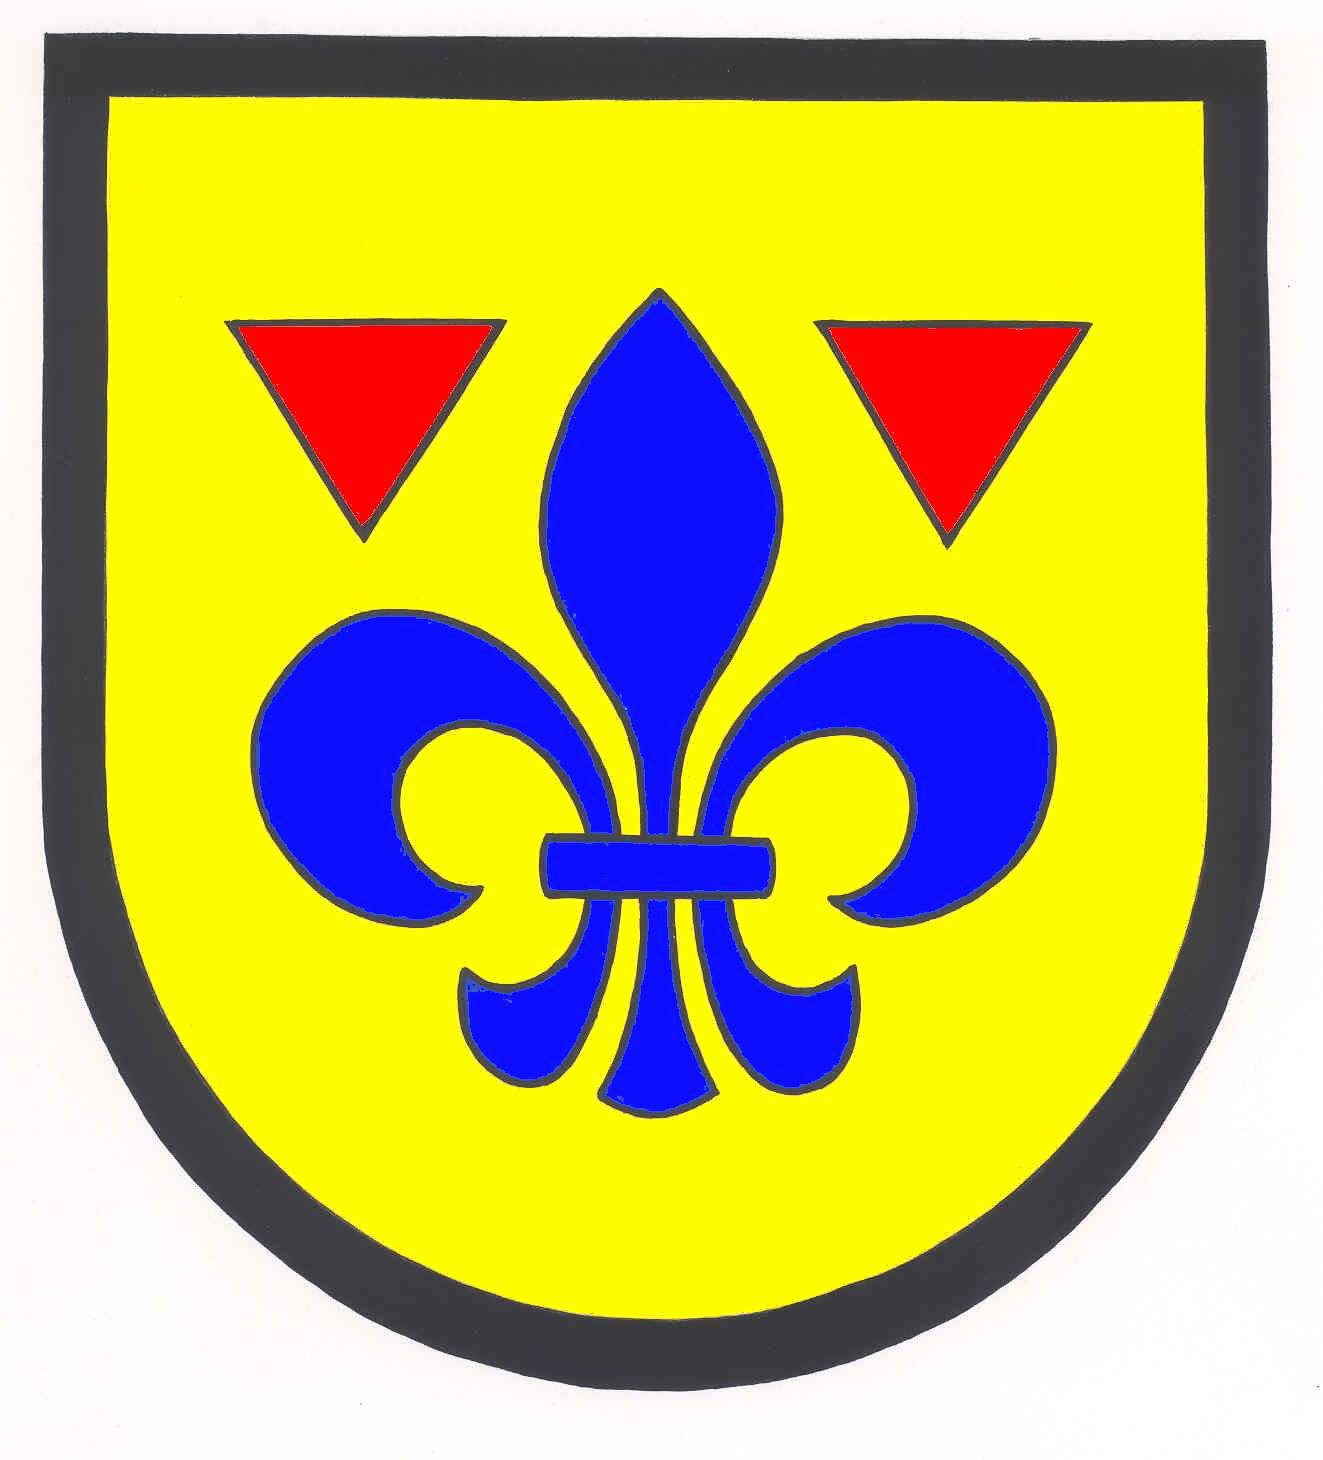 Wappen Gemeinde Gülzow, Kreis Herzogtum Lauenburg